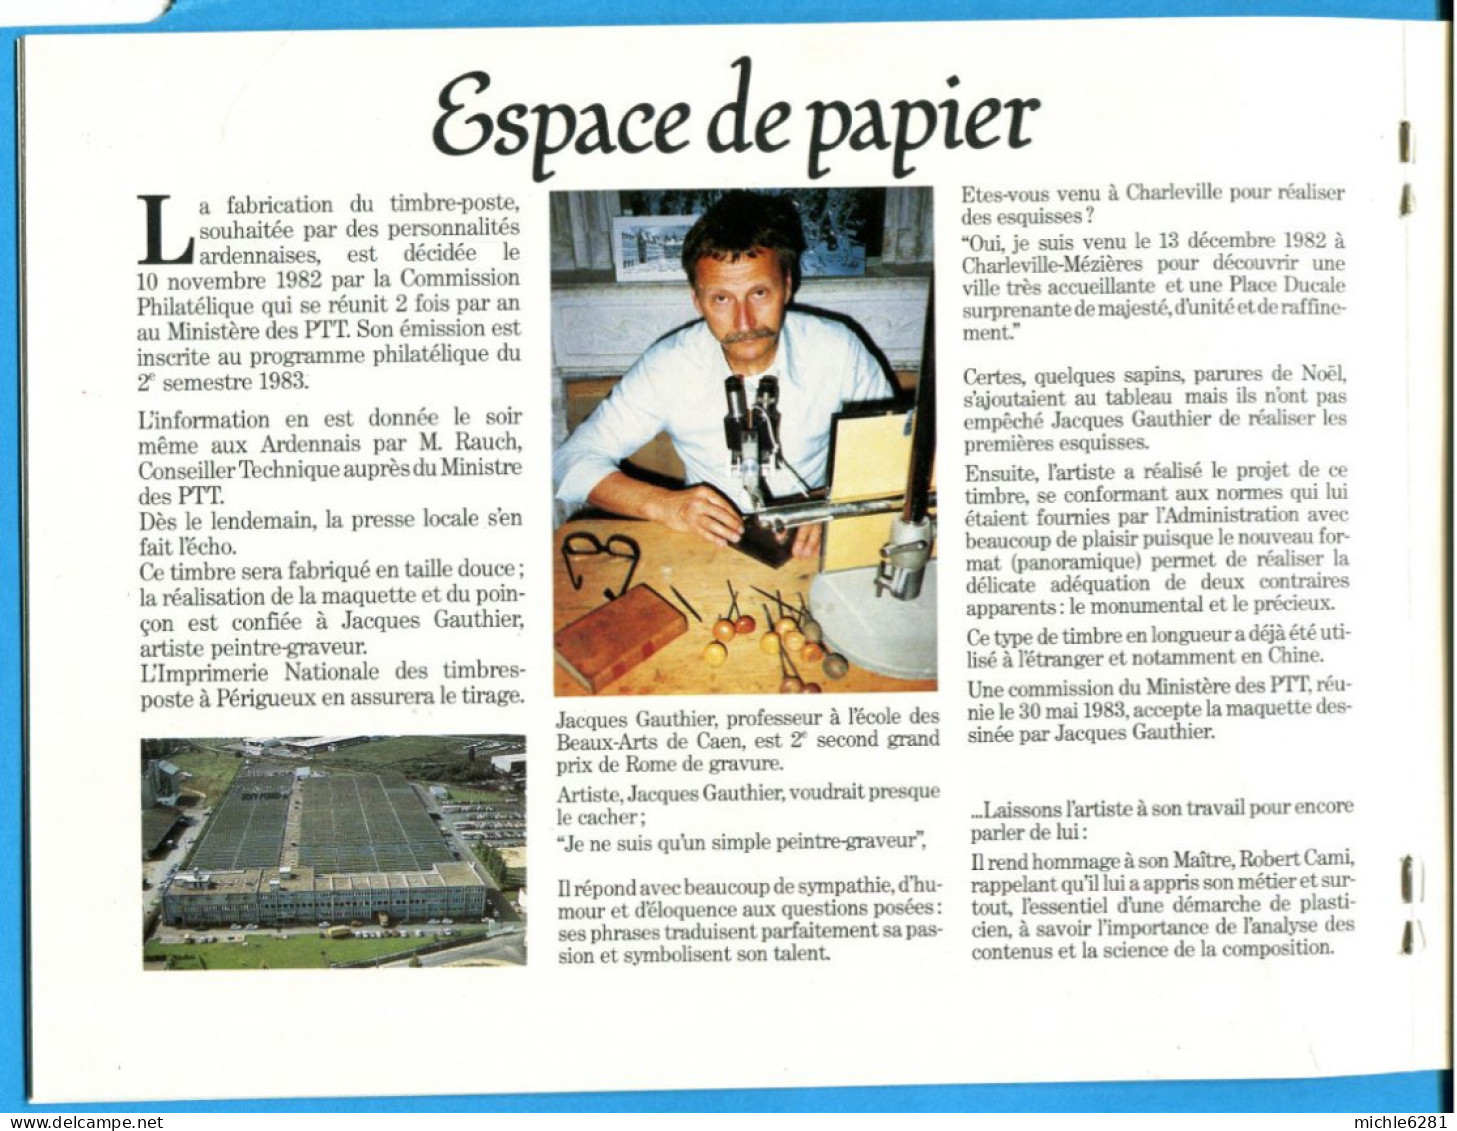 2206 - 1983 - Inauguration du bureau de poste rénové de Nouvion sur Meuse 26 octobre 1983